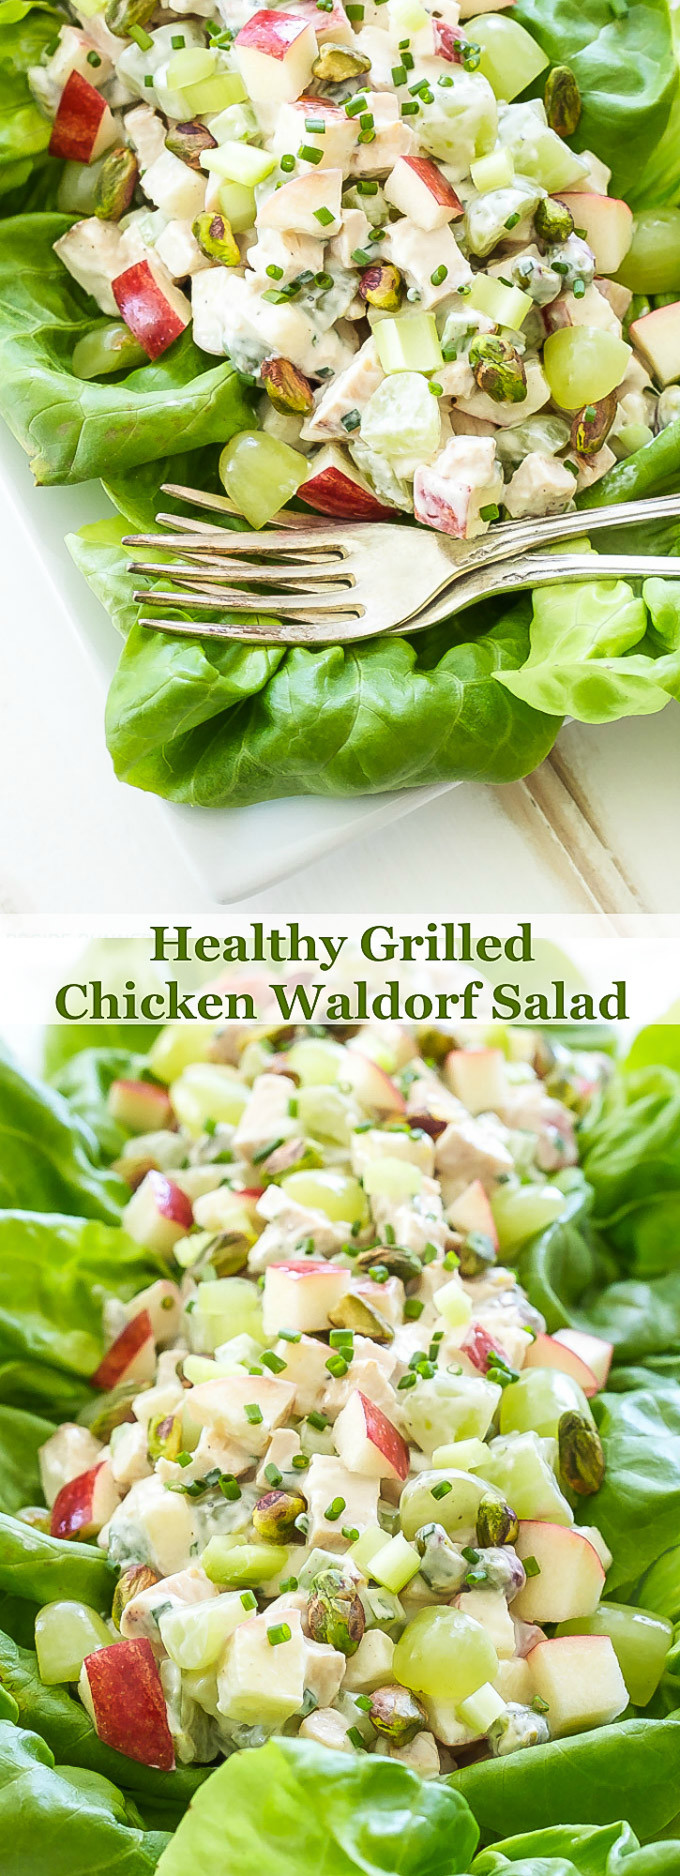 Healthy Grilled Chicken Salad
 Healthy Grilled Chicken Waldorf Salad Recipe Runner